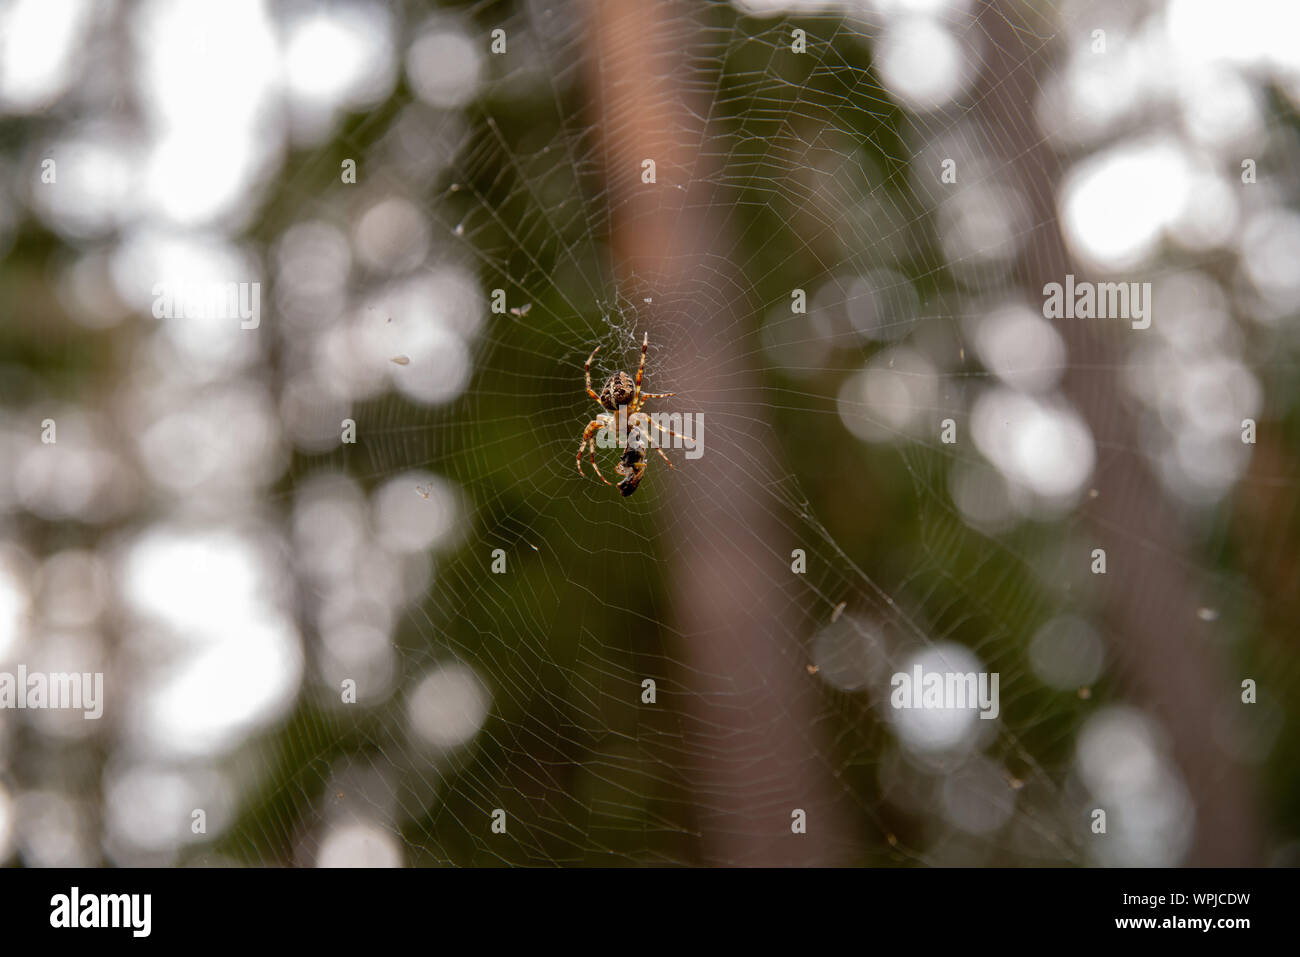 Spinnennetz im Wald, die Spinne eine Fliege gejagt Stockfoto